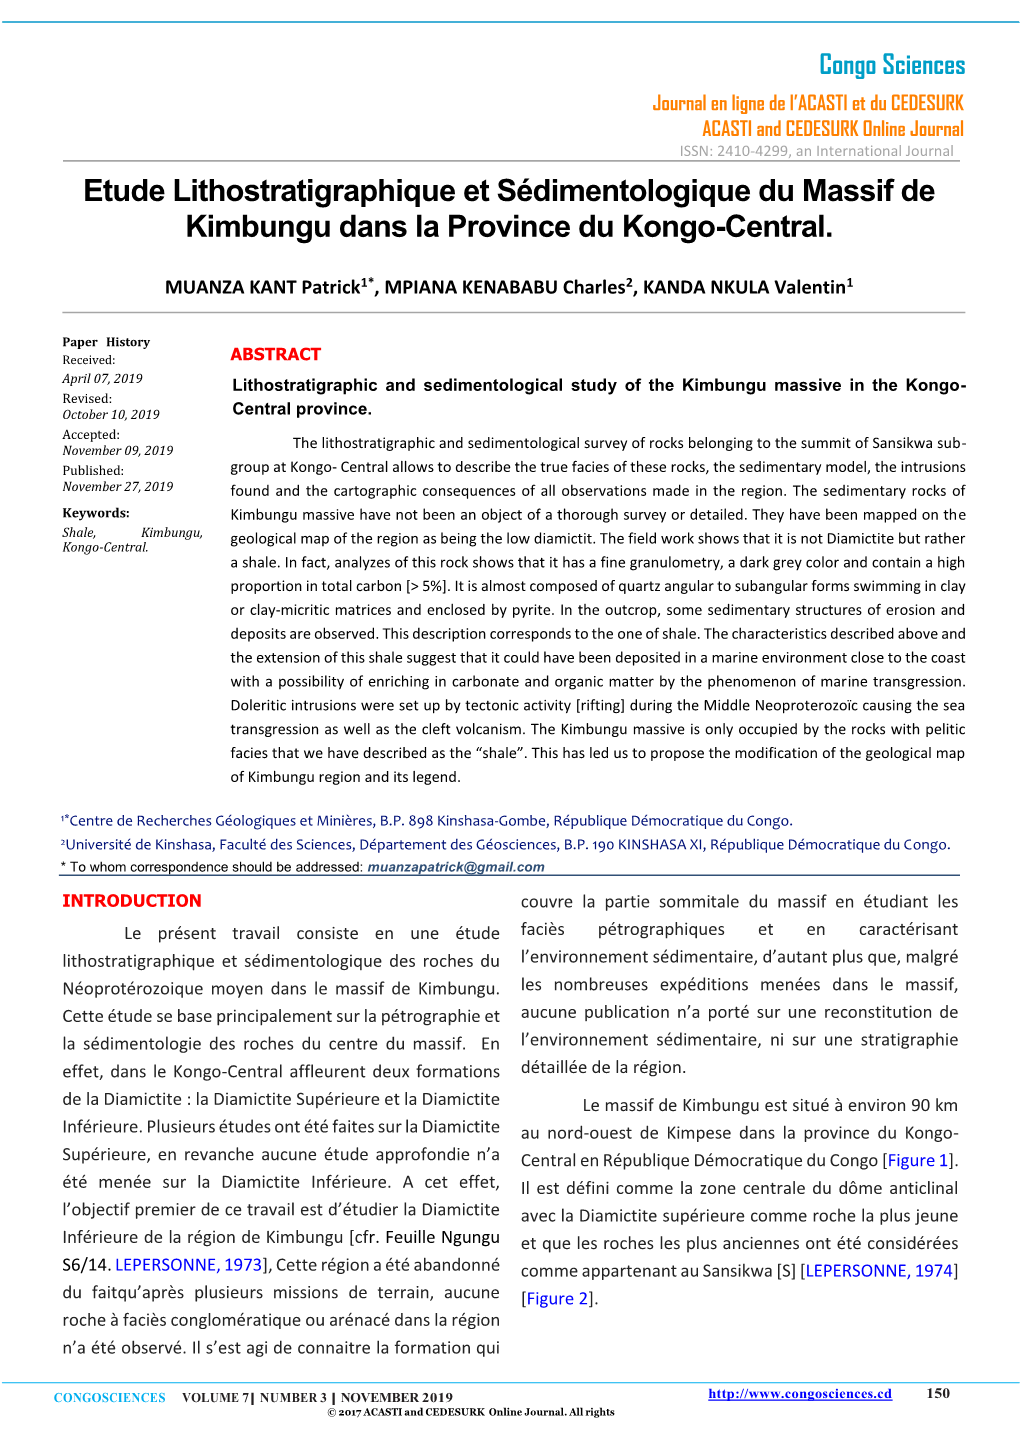 Etude Lithostratigraphique Et Sédimentologique Du Massif De Kimbungu Dans La Province Du Kongo-Central